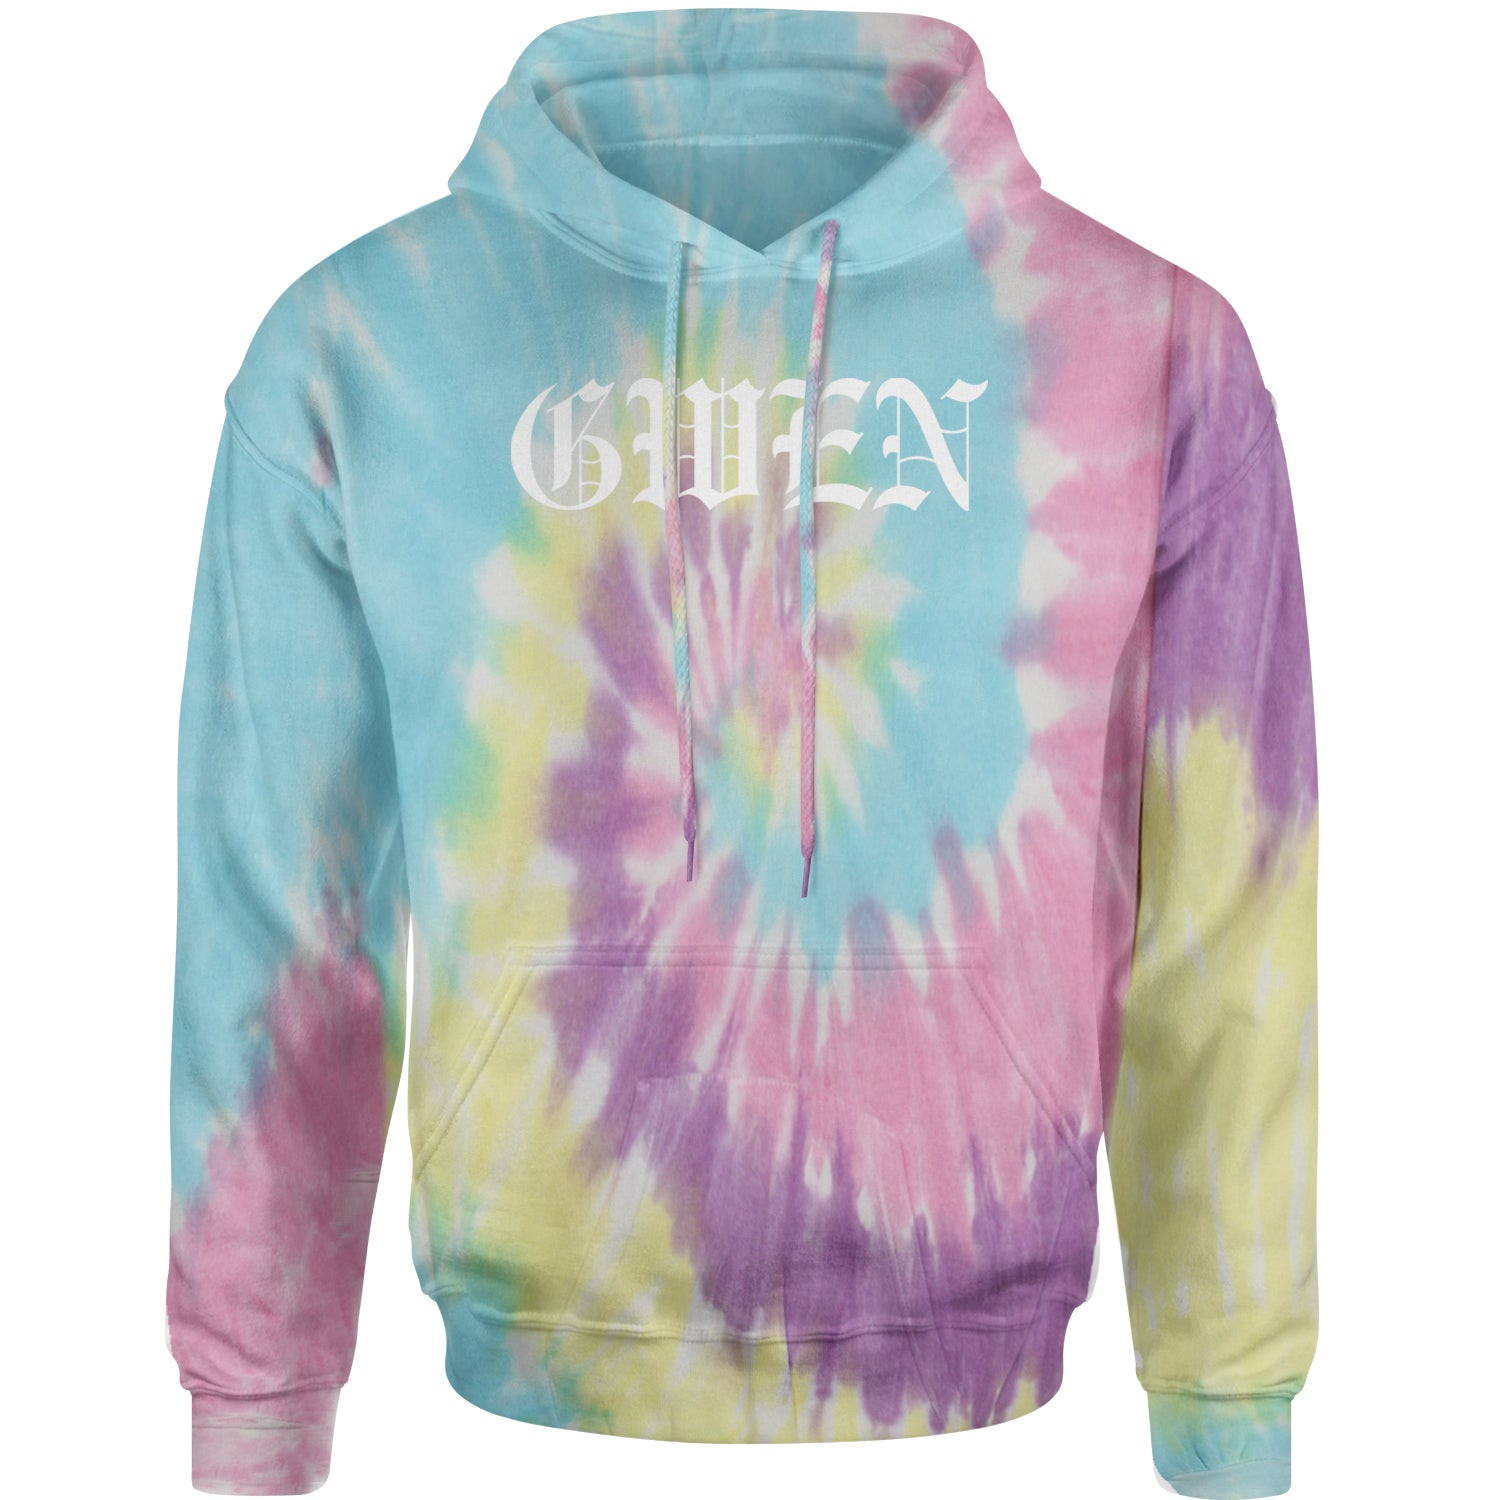 Gwen 90's Y2K Throwback Grunge Ska Adult Hoodie Sweatshirt